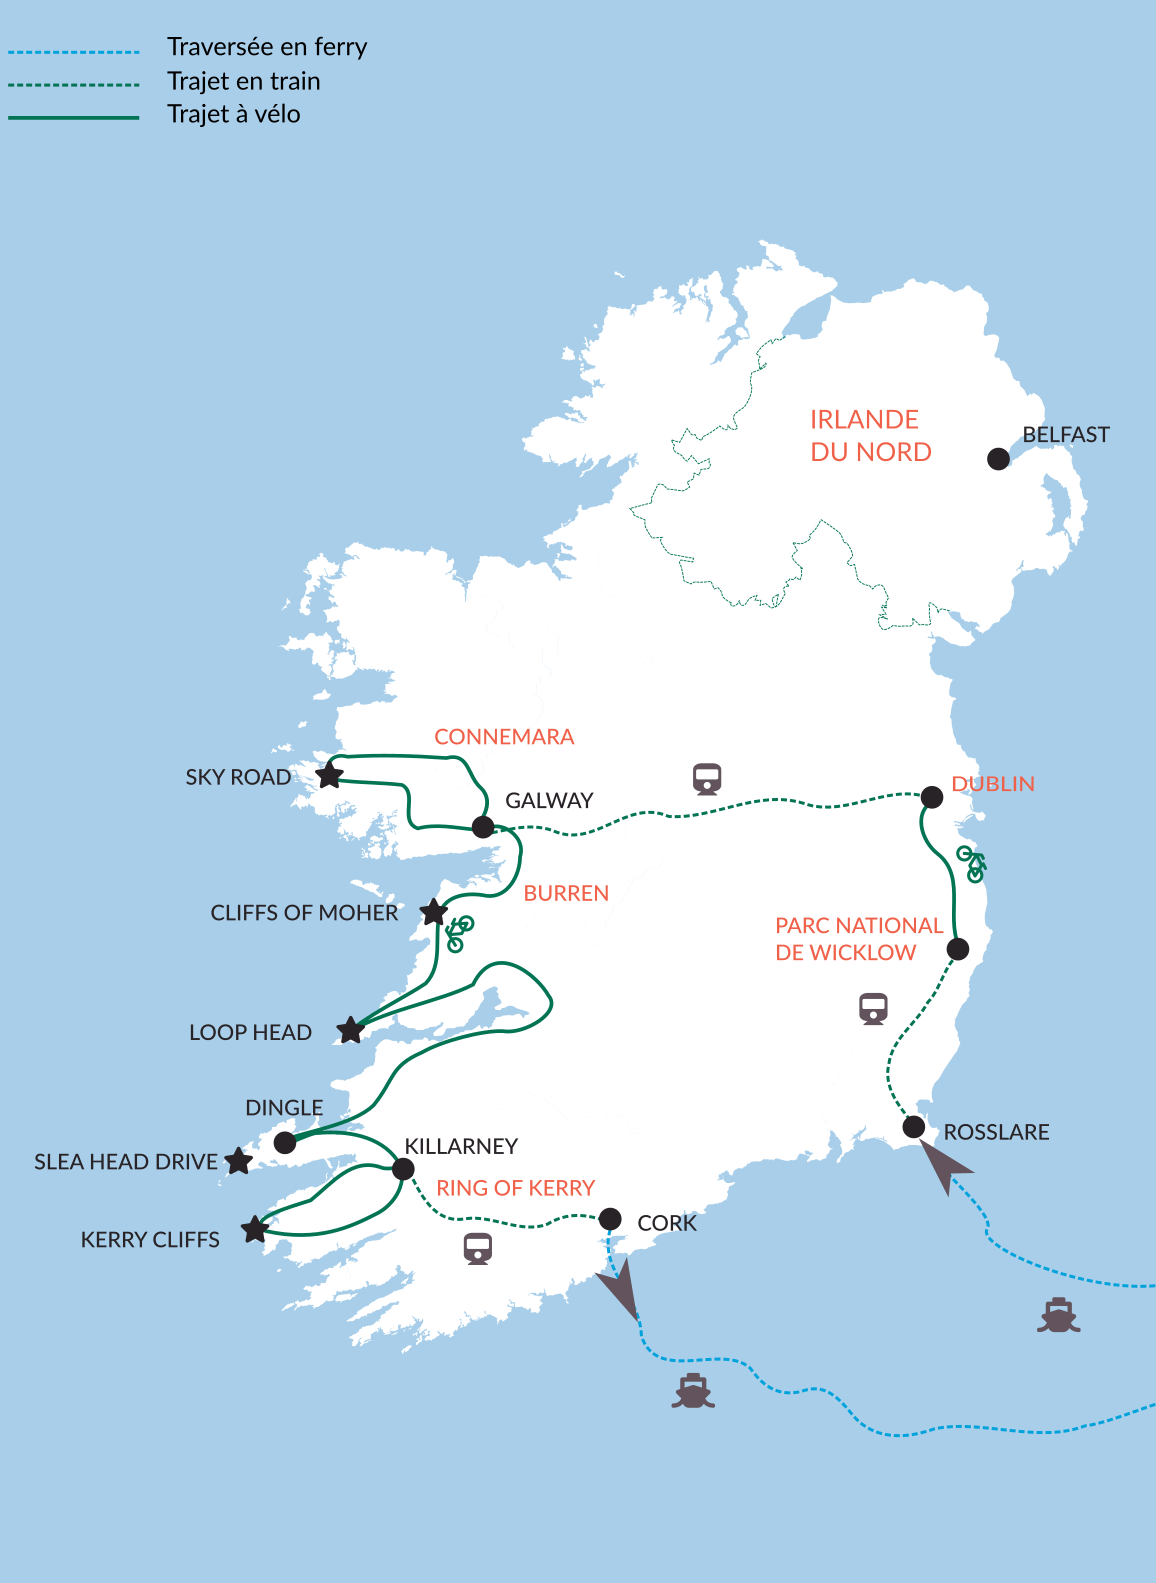 ebook road trip irlande